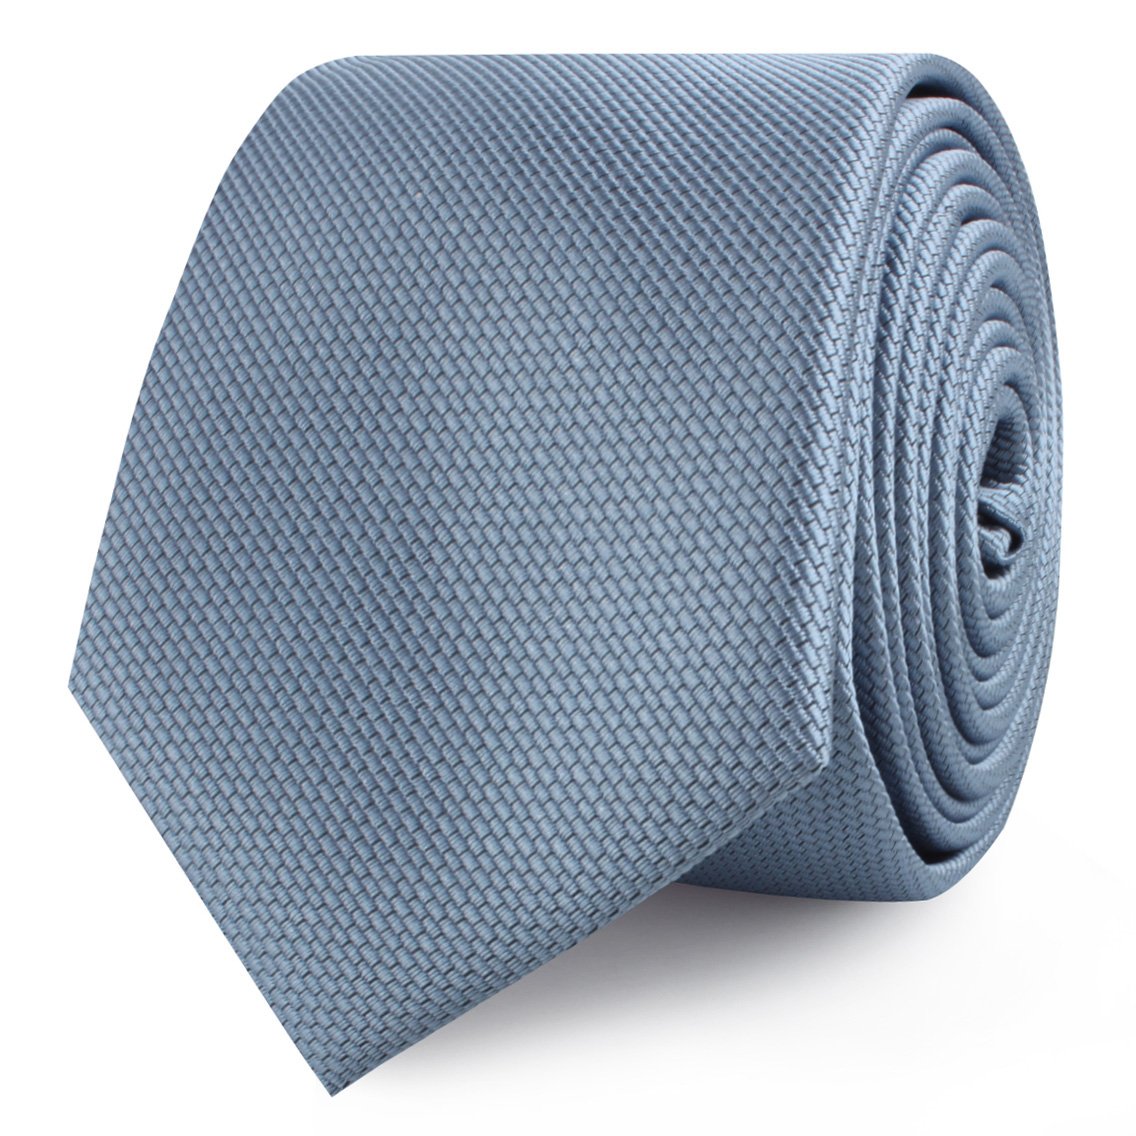 Steel Blue Weave Skinny Ties